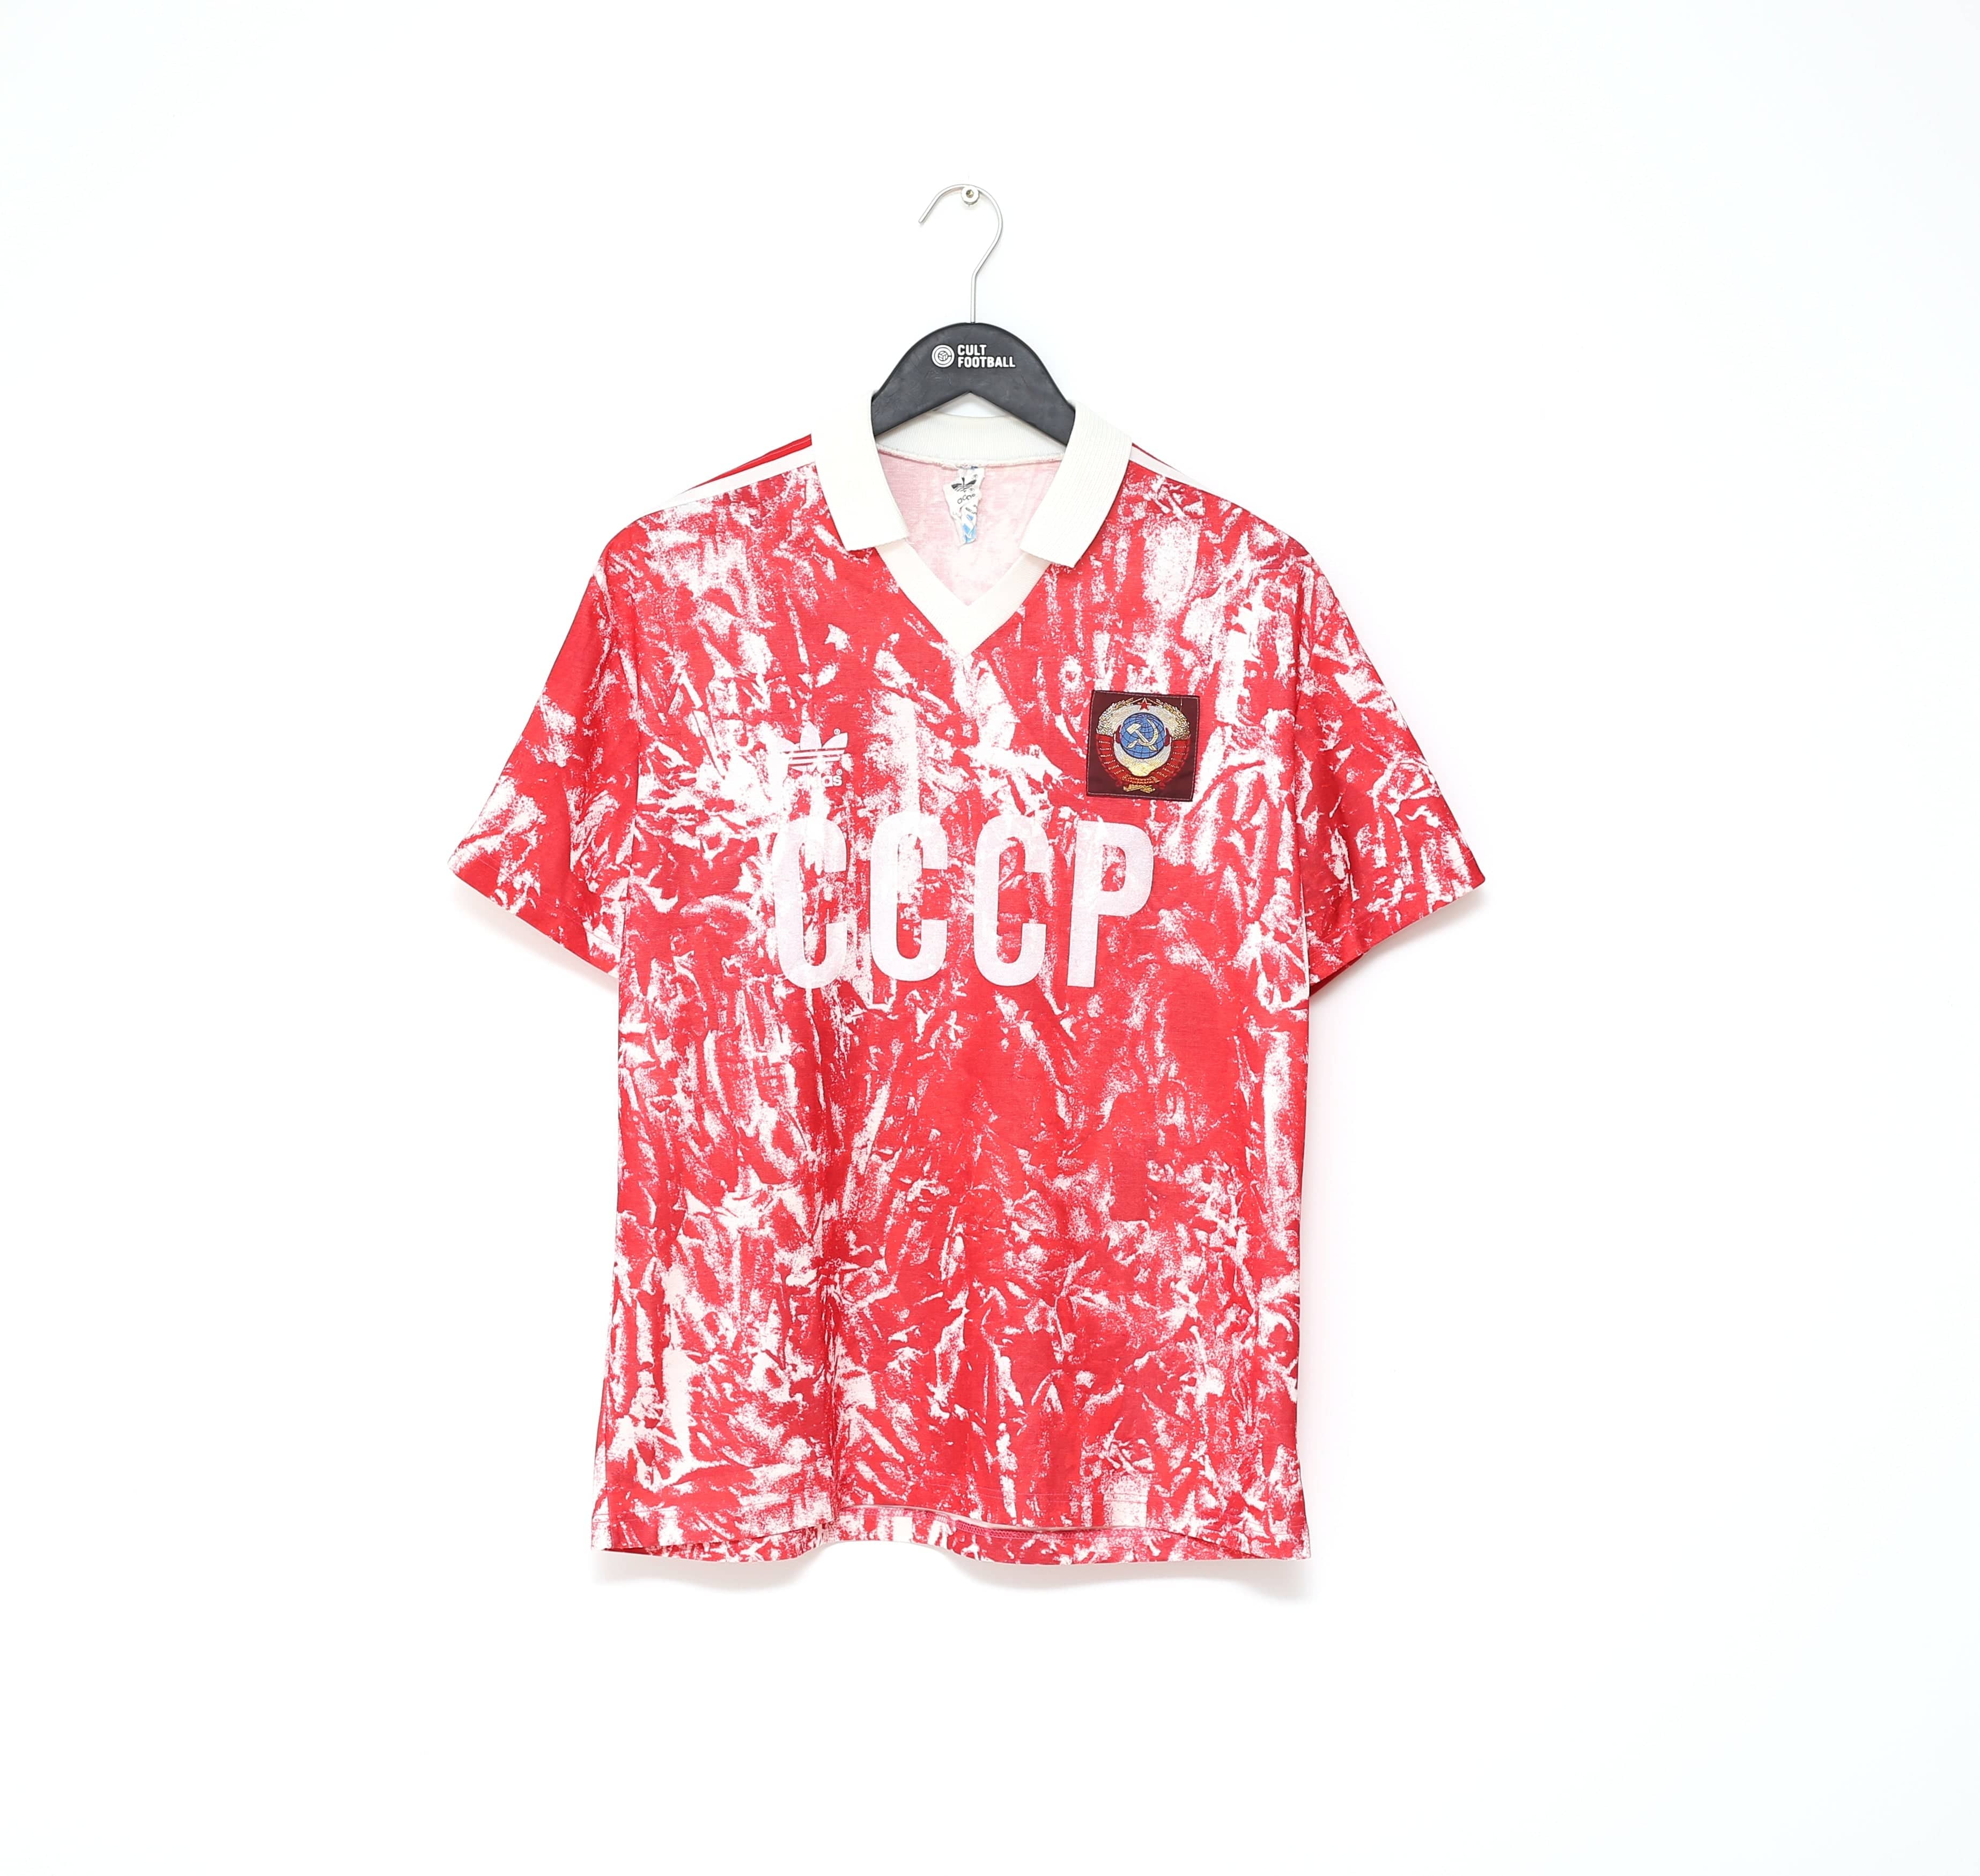 Soviet Union (USSR) home shirt 1989-1991 in Medium